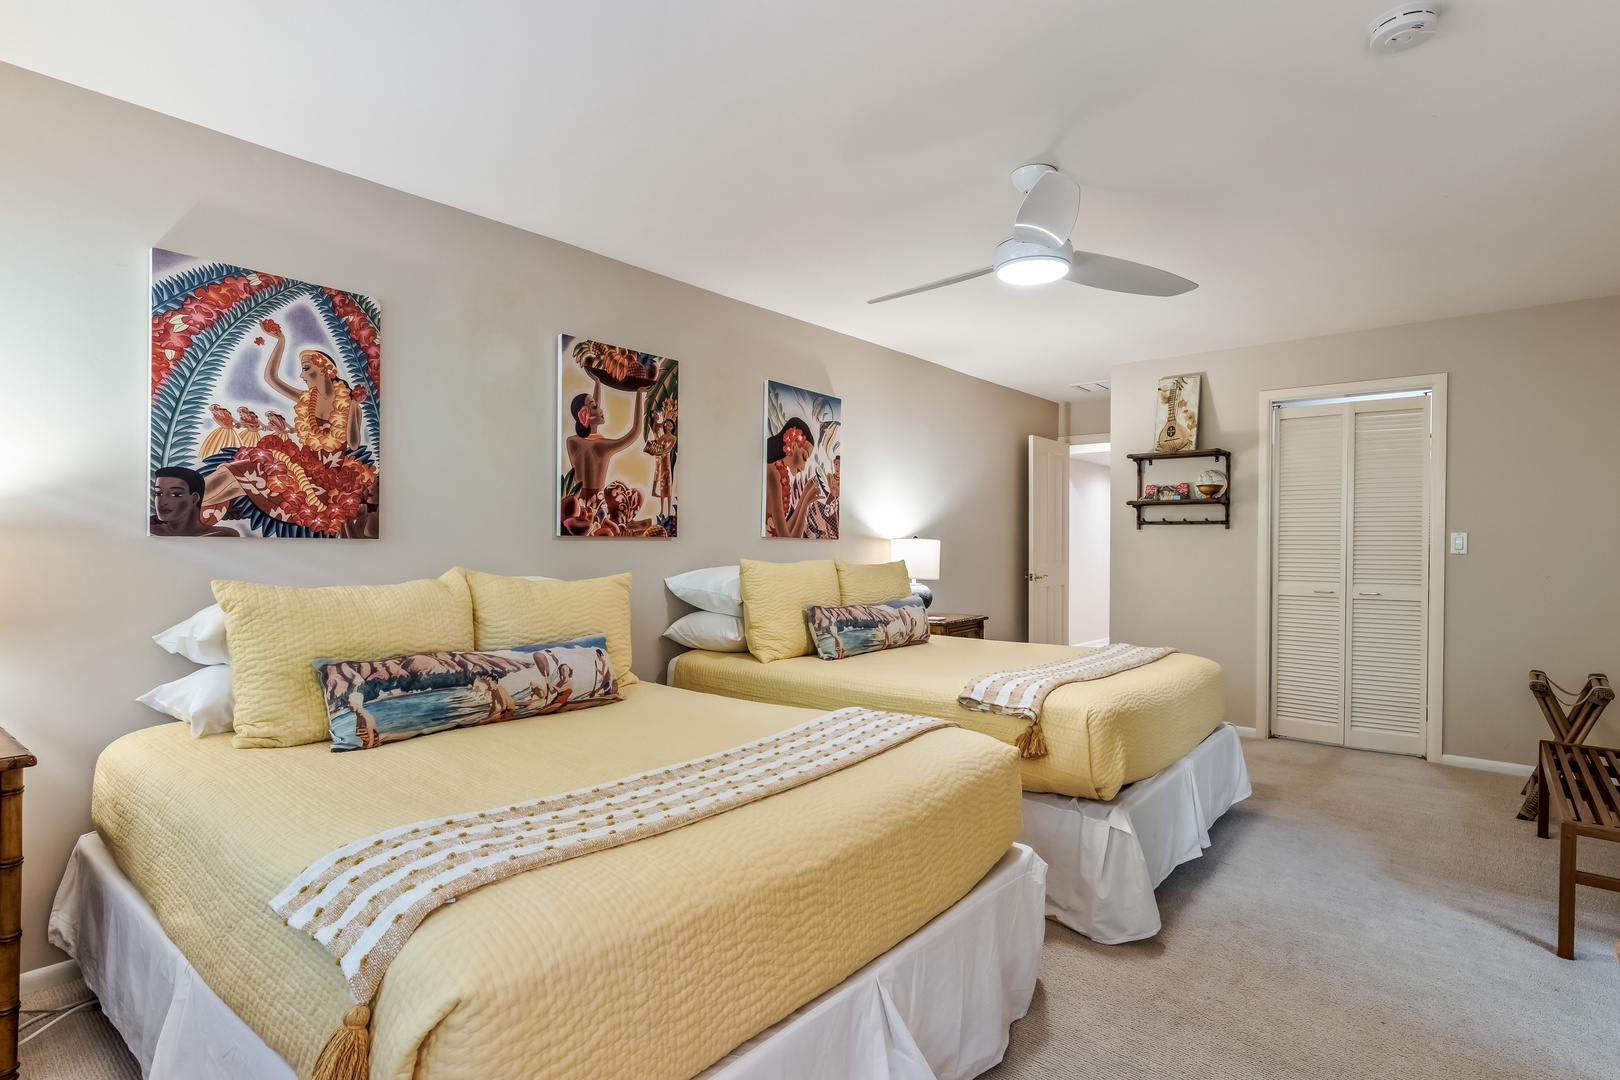 Honolulu Vacation Rentals, Hale Ola - Guest bedroom 3 offers 2 queen beds